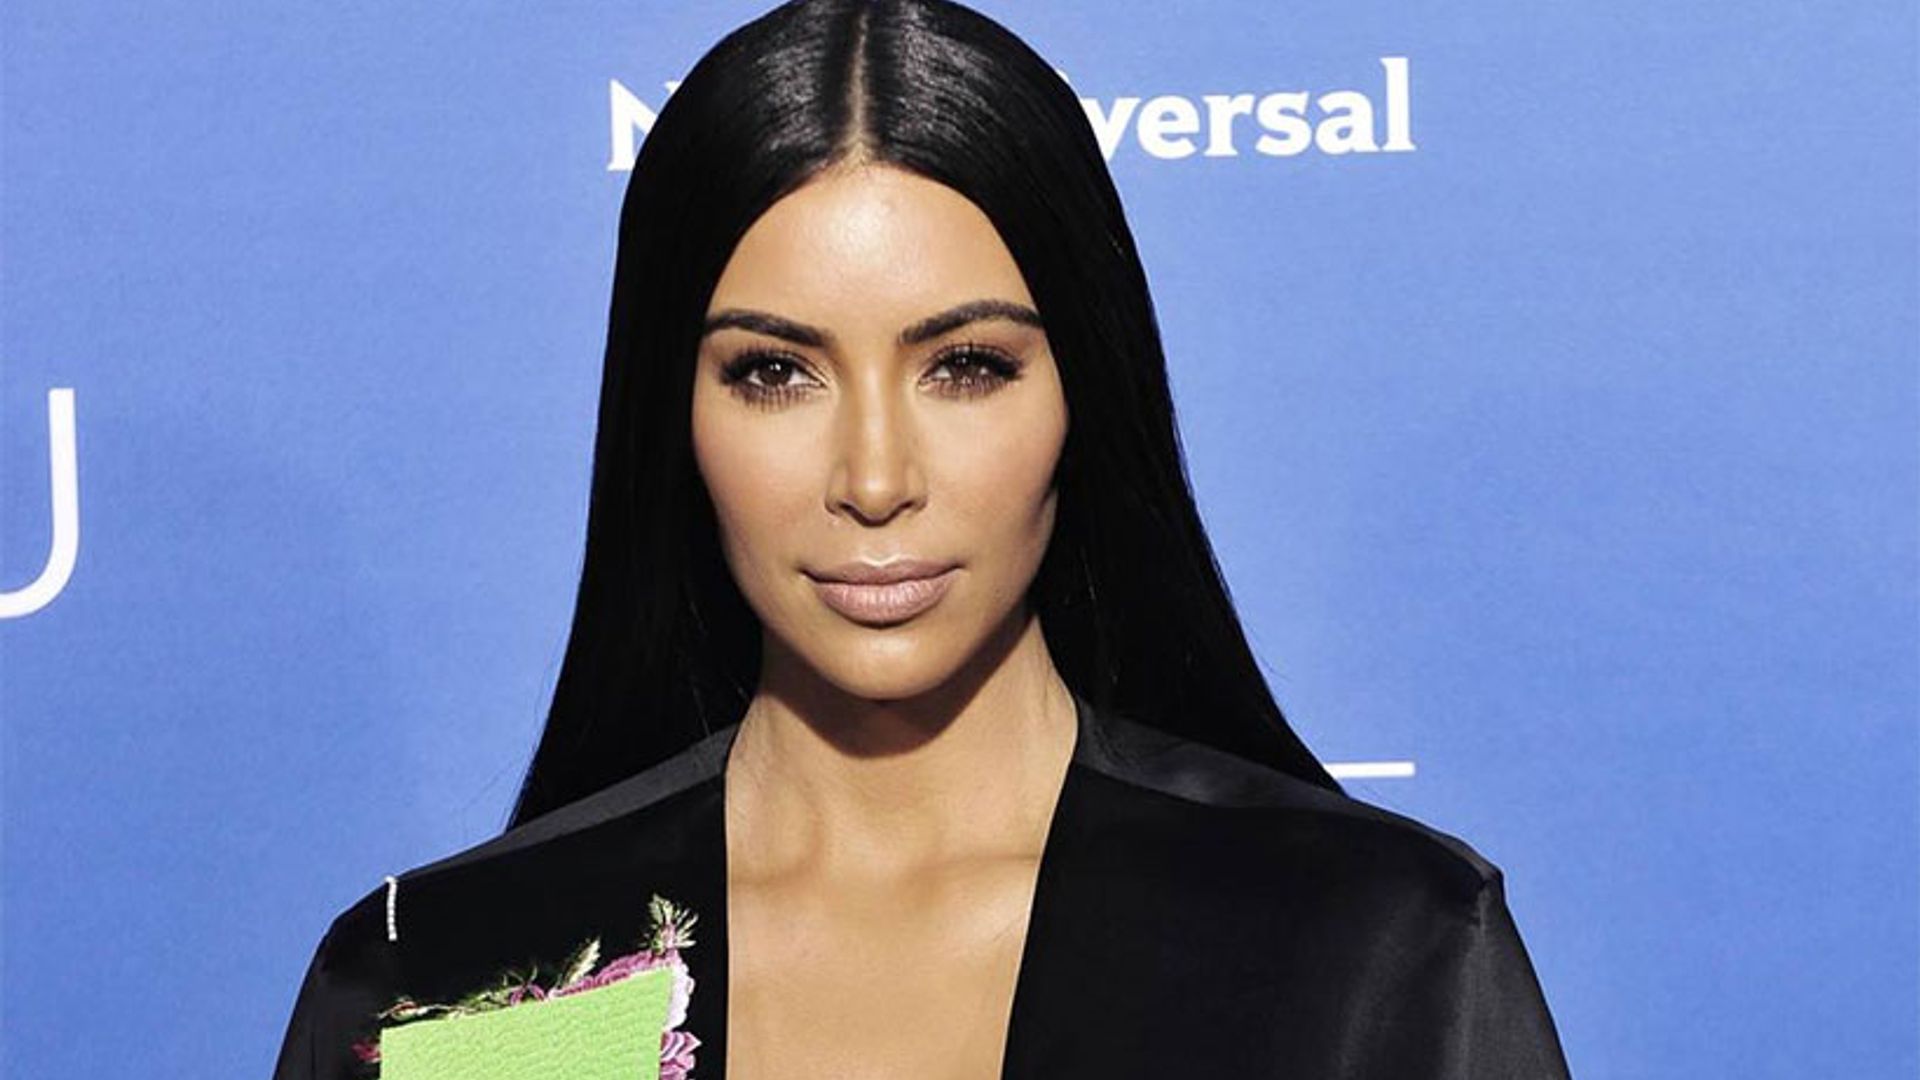 Get the look: Straight, sleek hair like Kim Kardashian